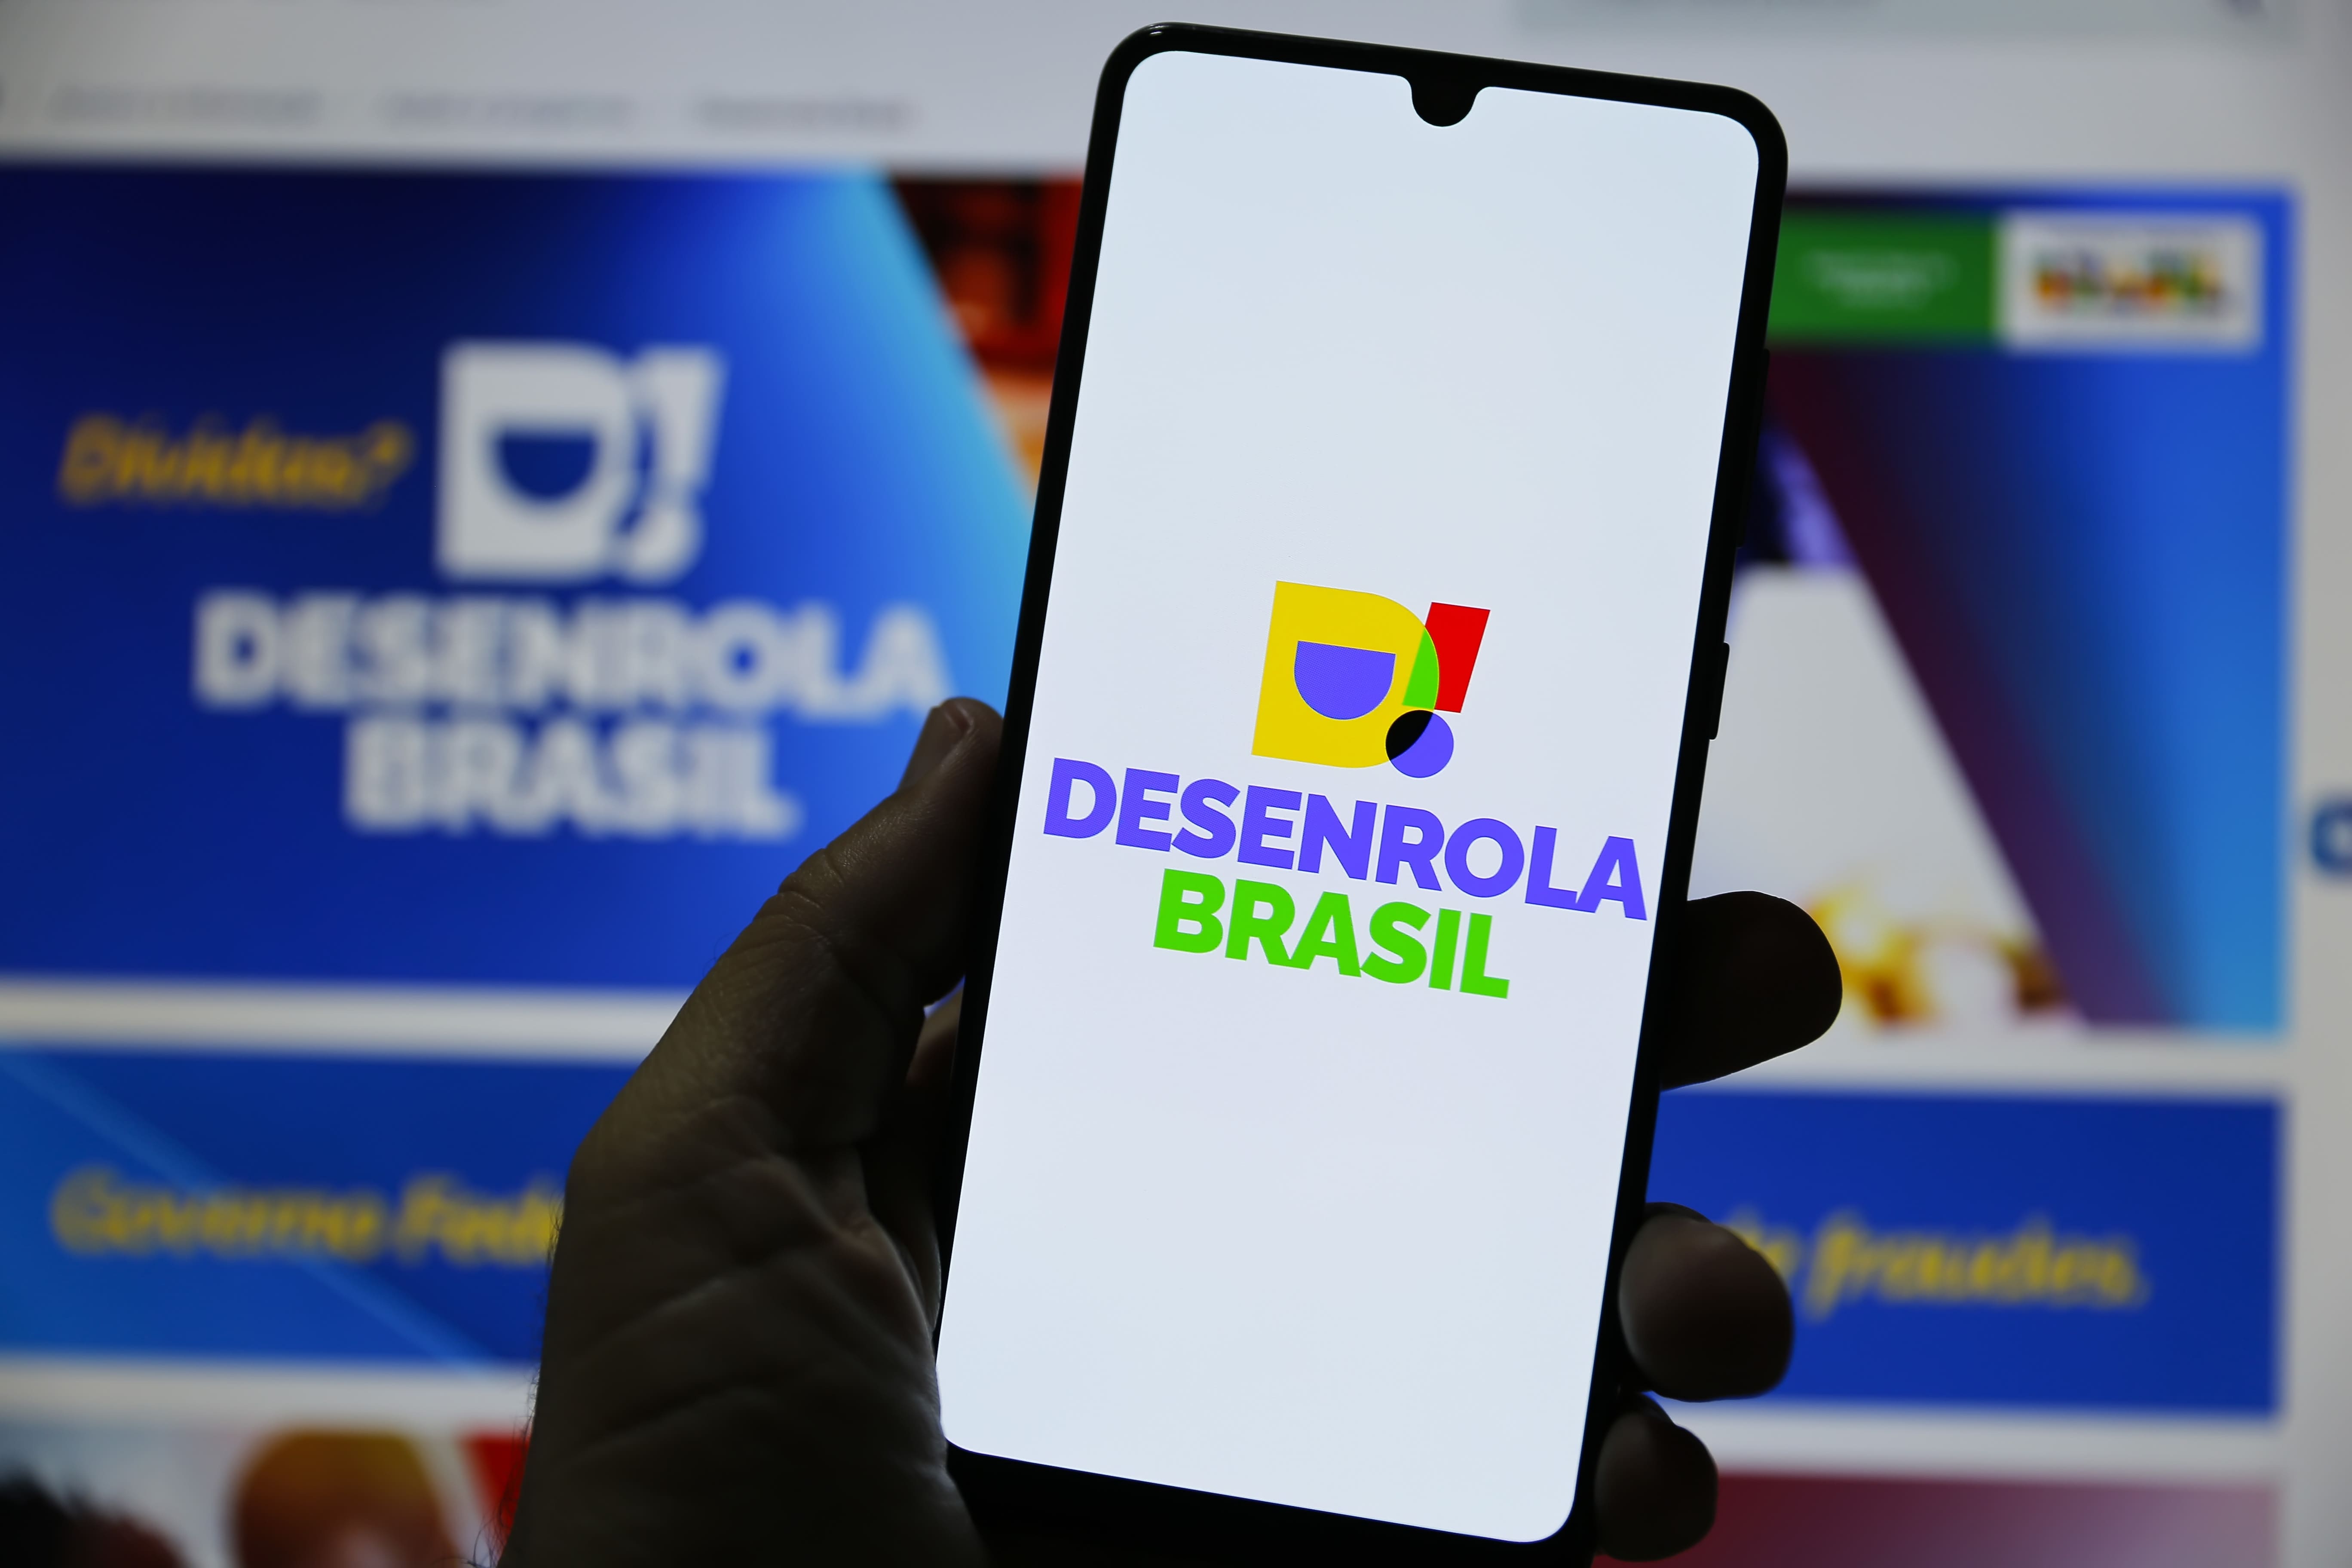 Programa Desenrola Brasil: oportunidade para quitar dívidas com a Zema Financeira de forma facilitada